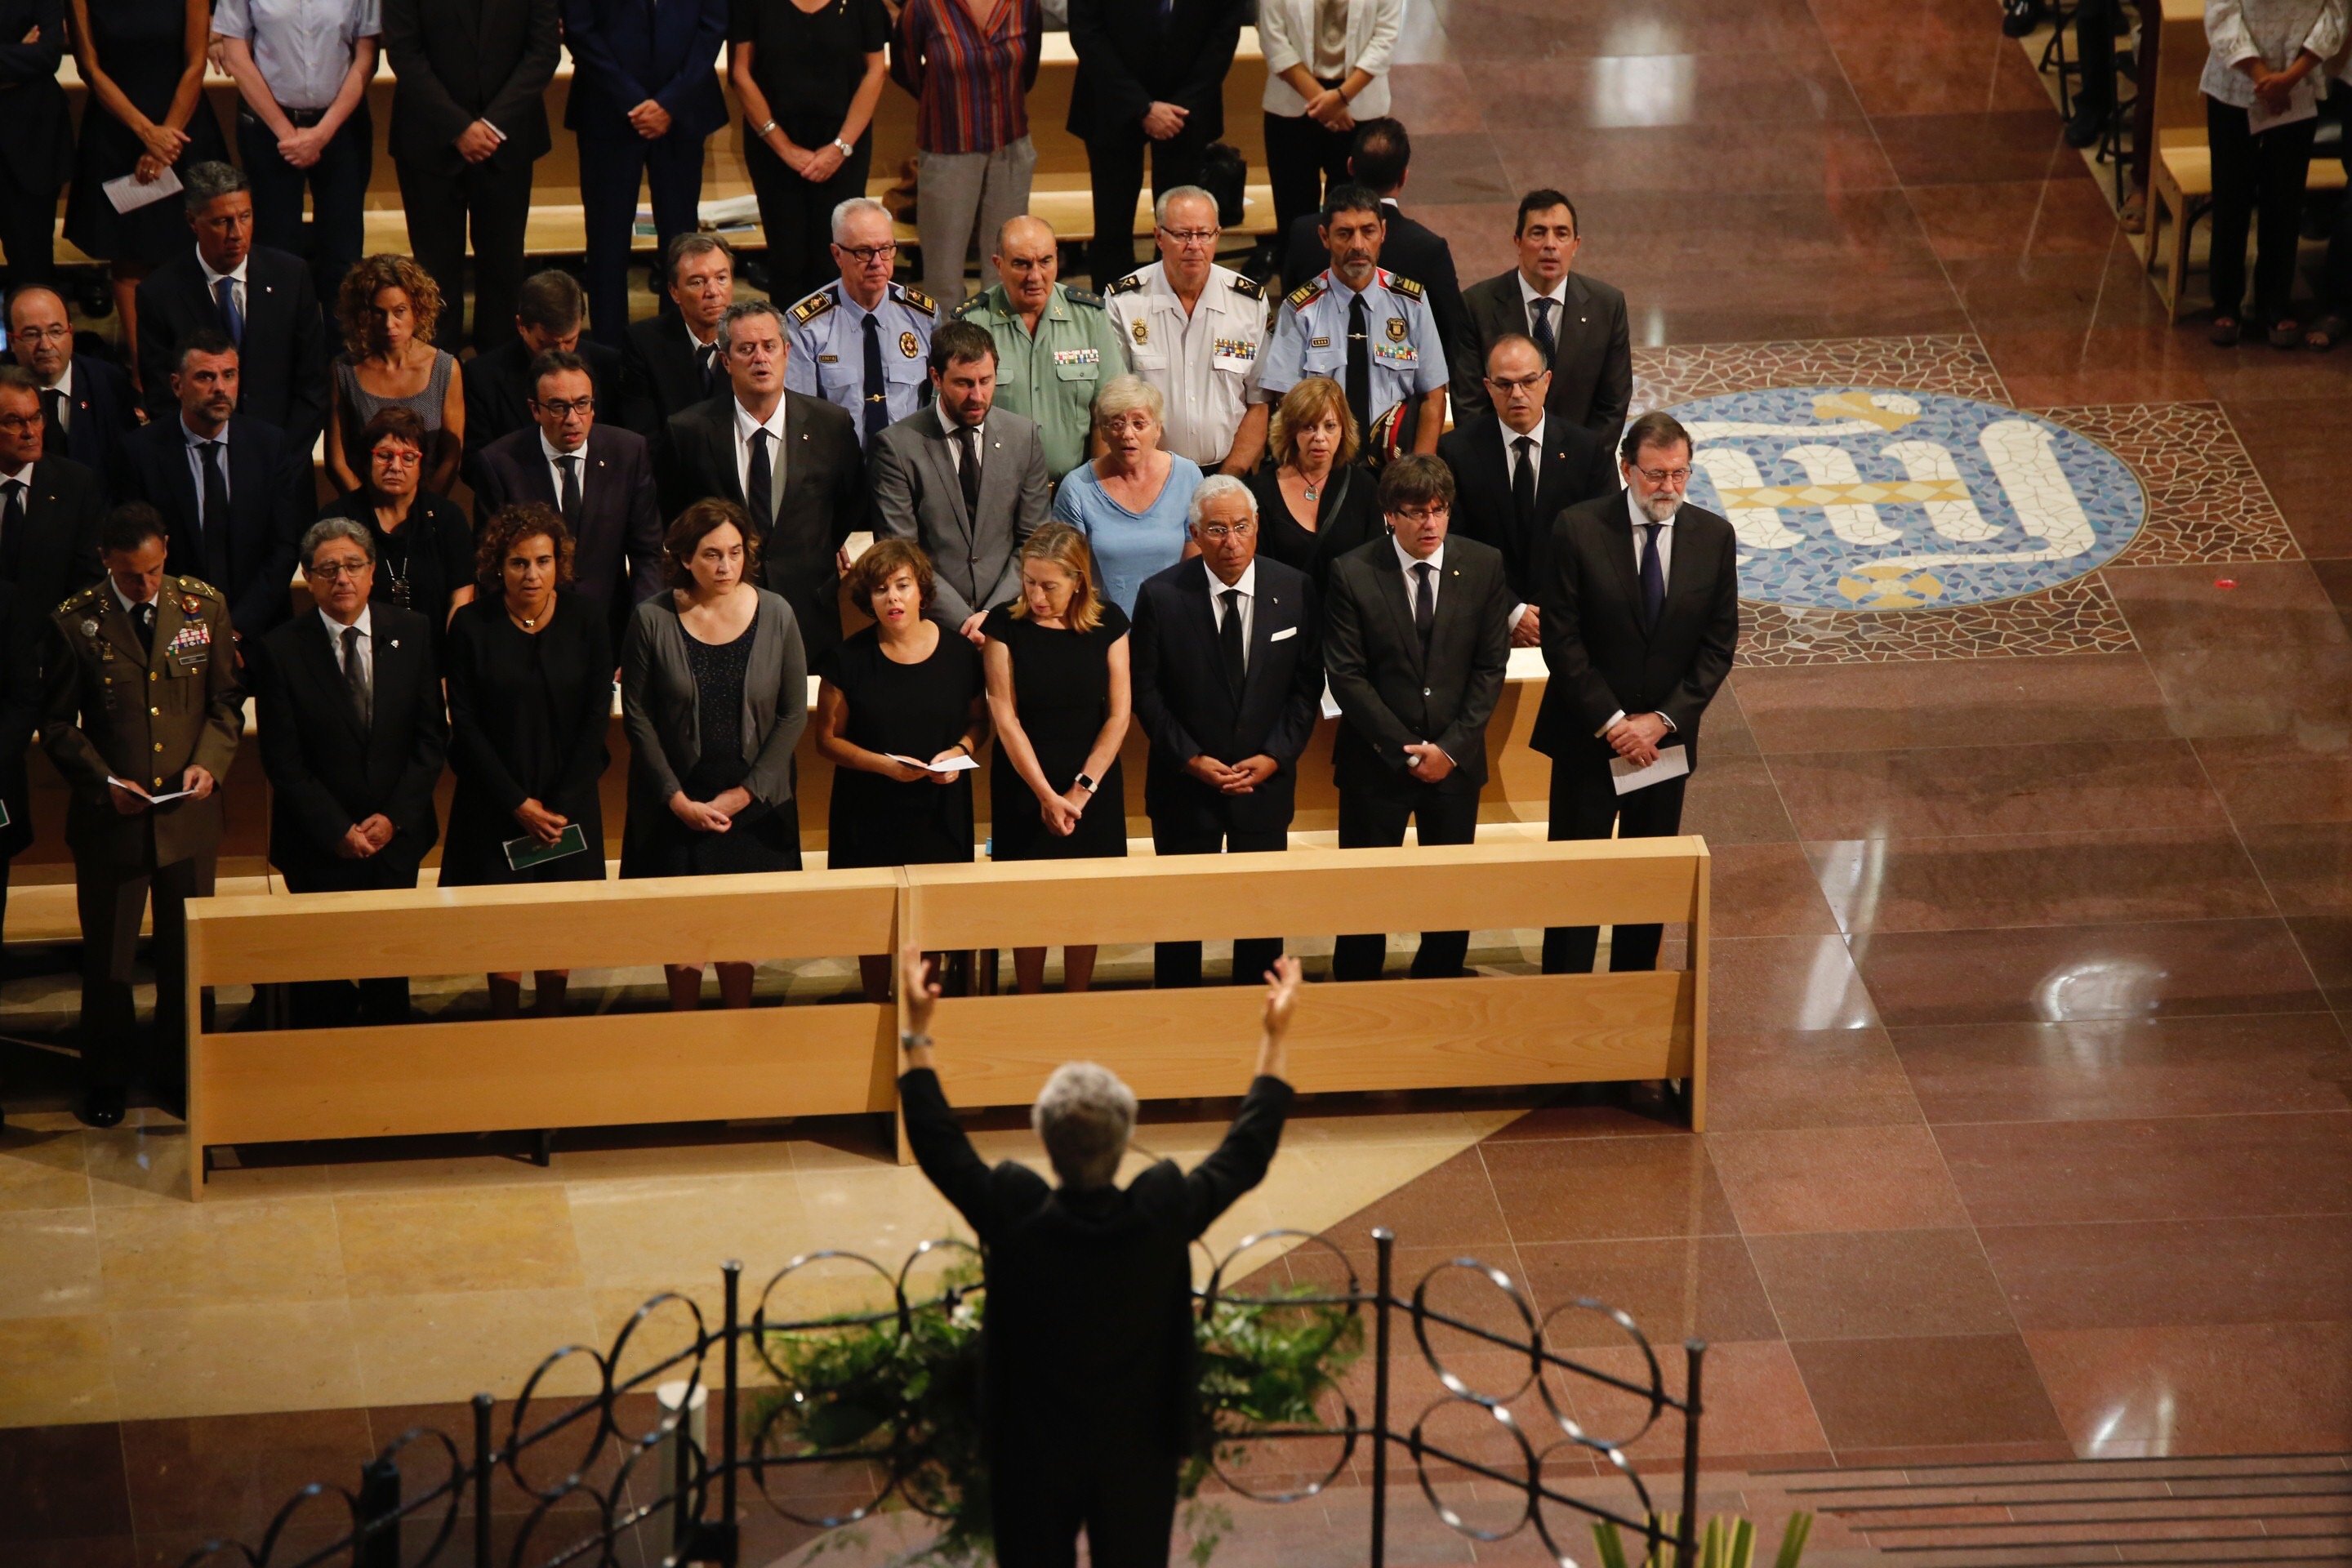 Els reis, Rajoy i Puigdemont, a la missa a la Sagrada Família pels atemptats